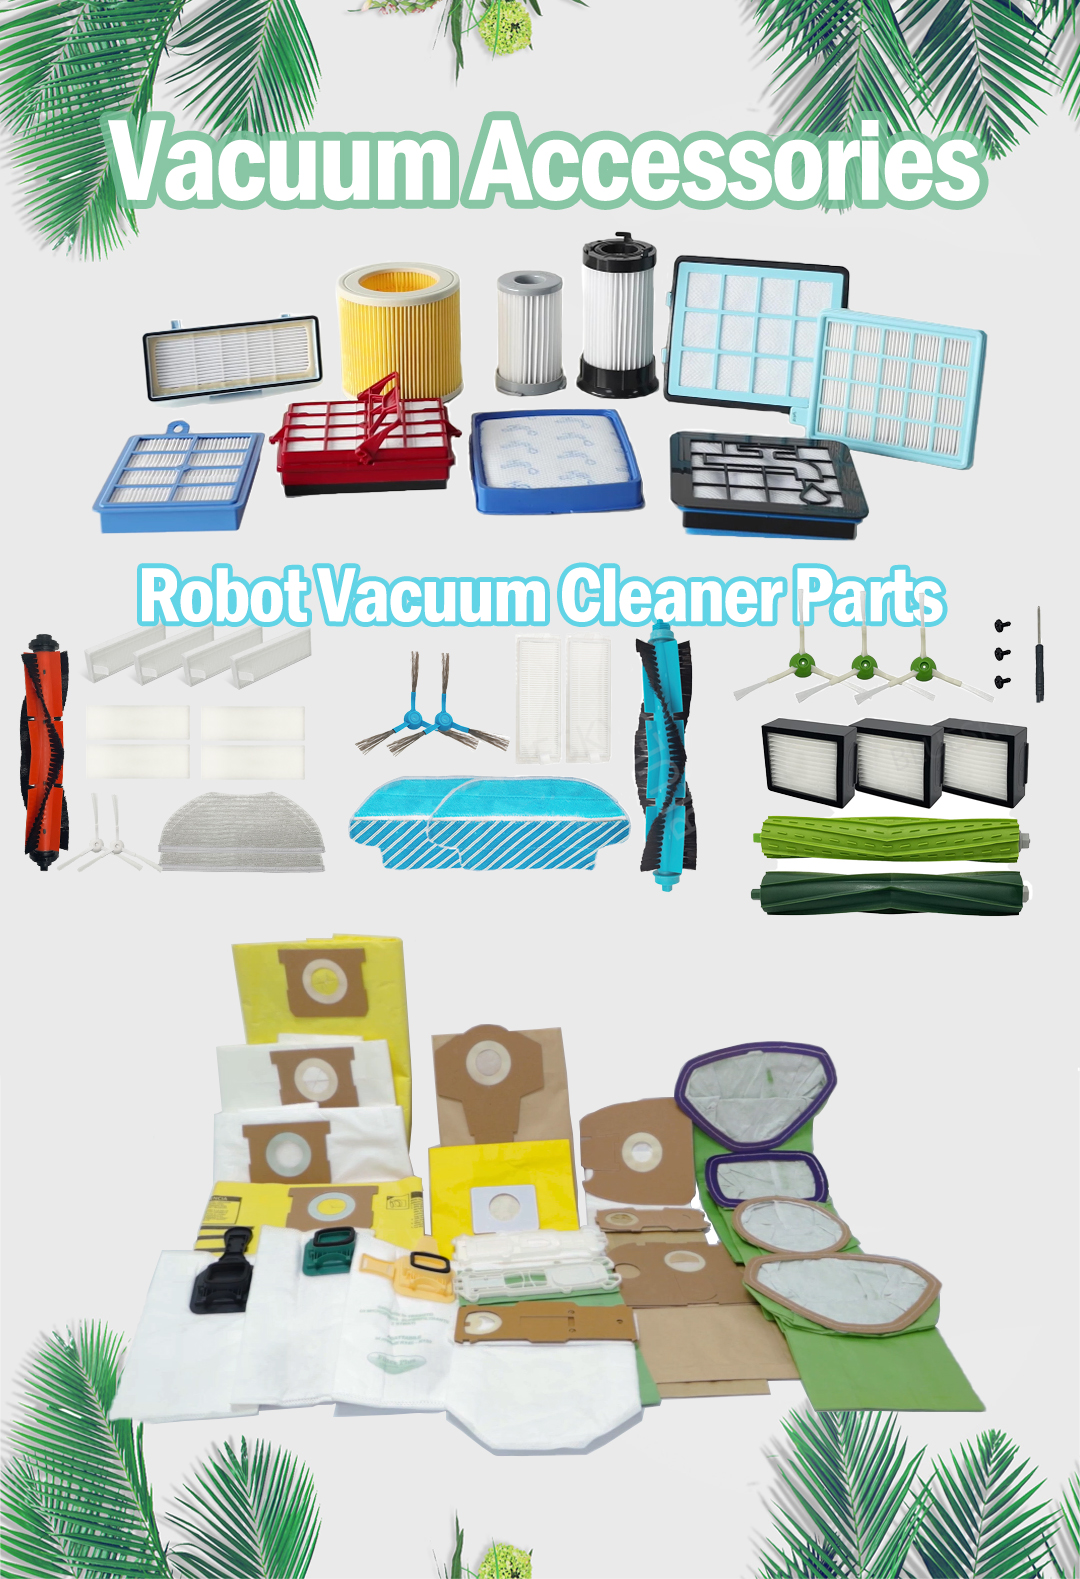 더 쉬운 집안일을 위해 진공 청소기 또는 로봇 청소기를 선택하시겠습니까?